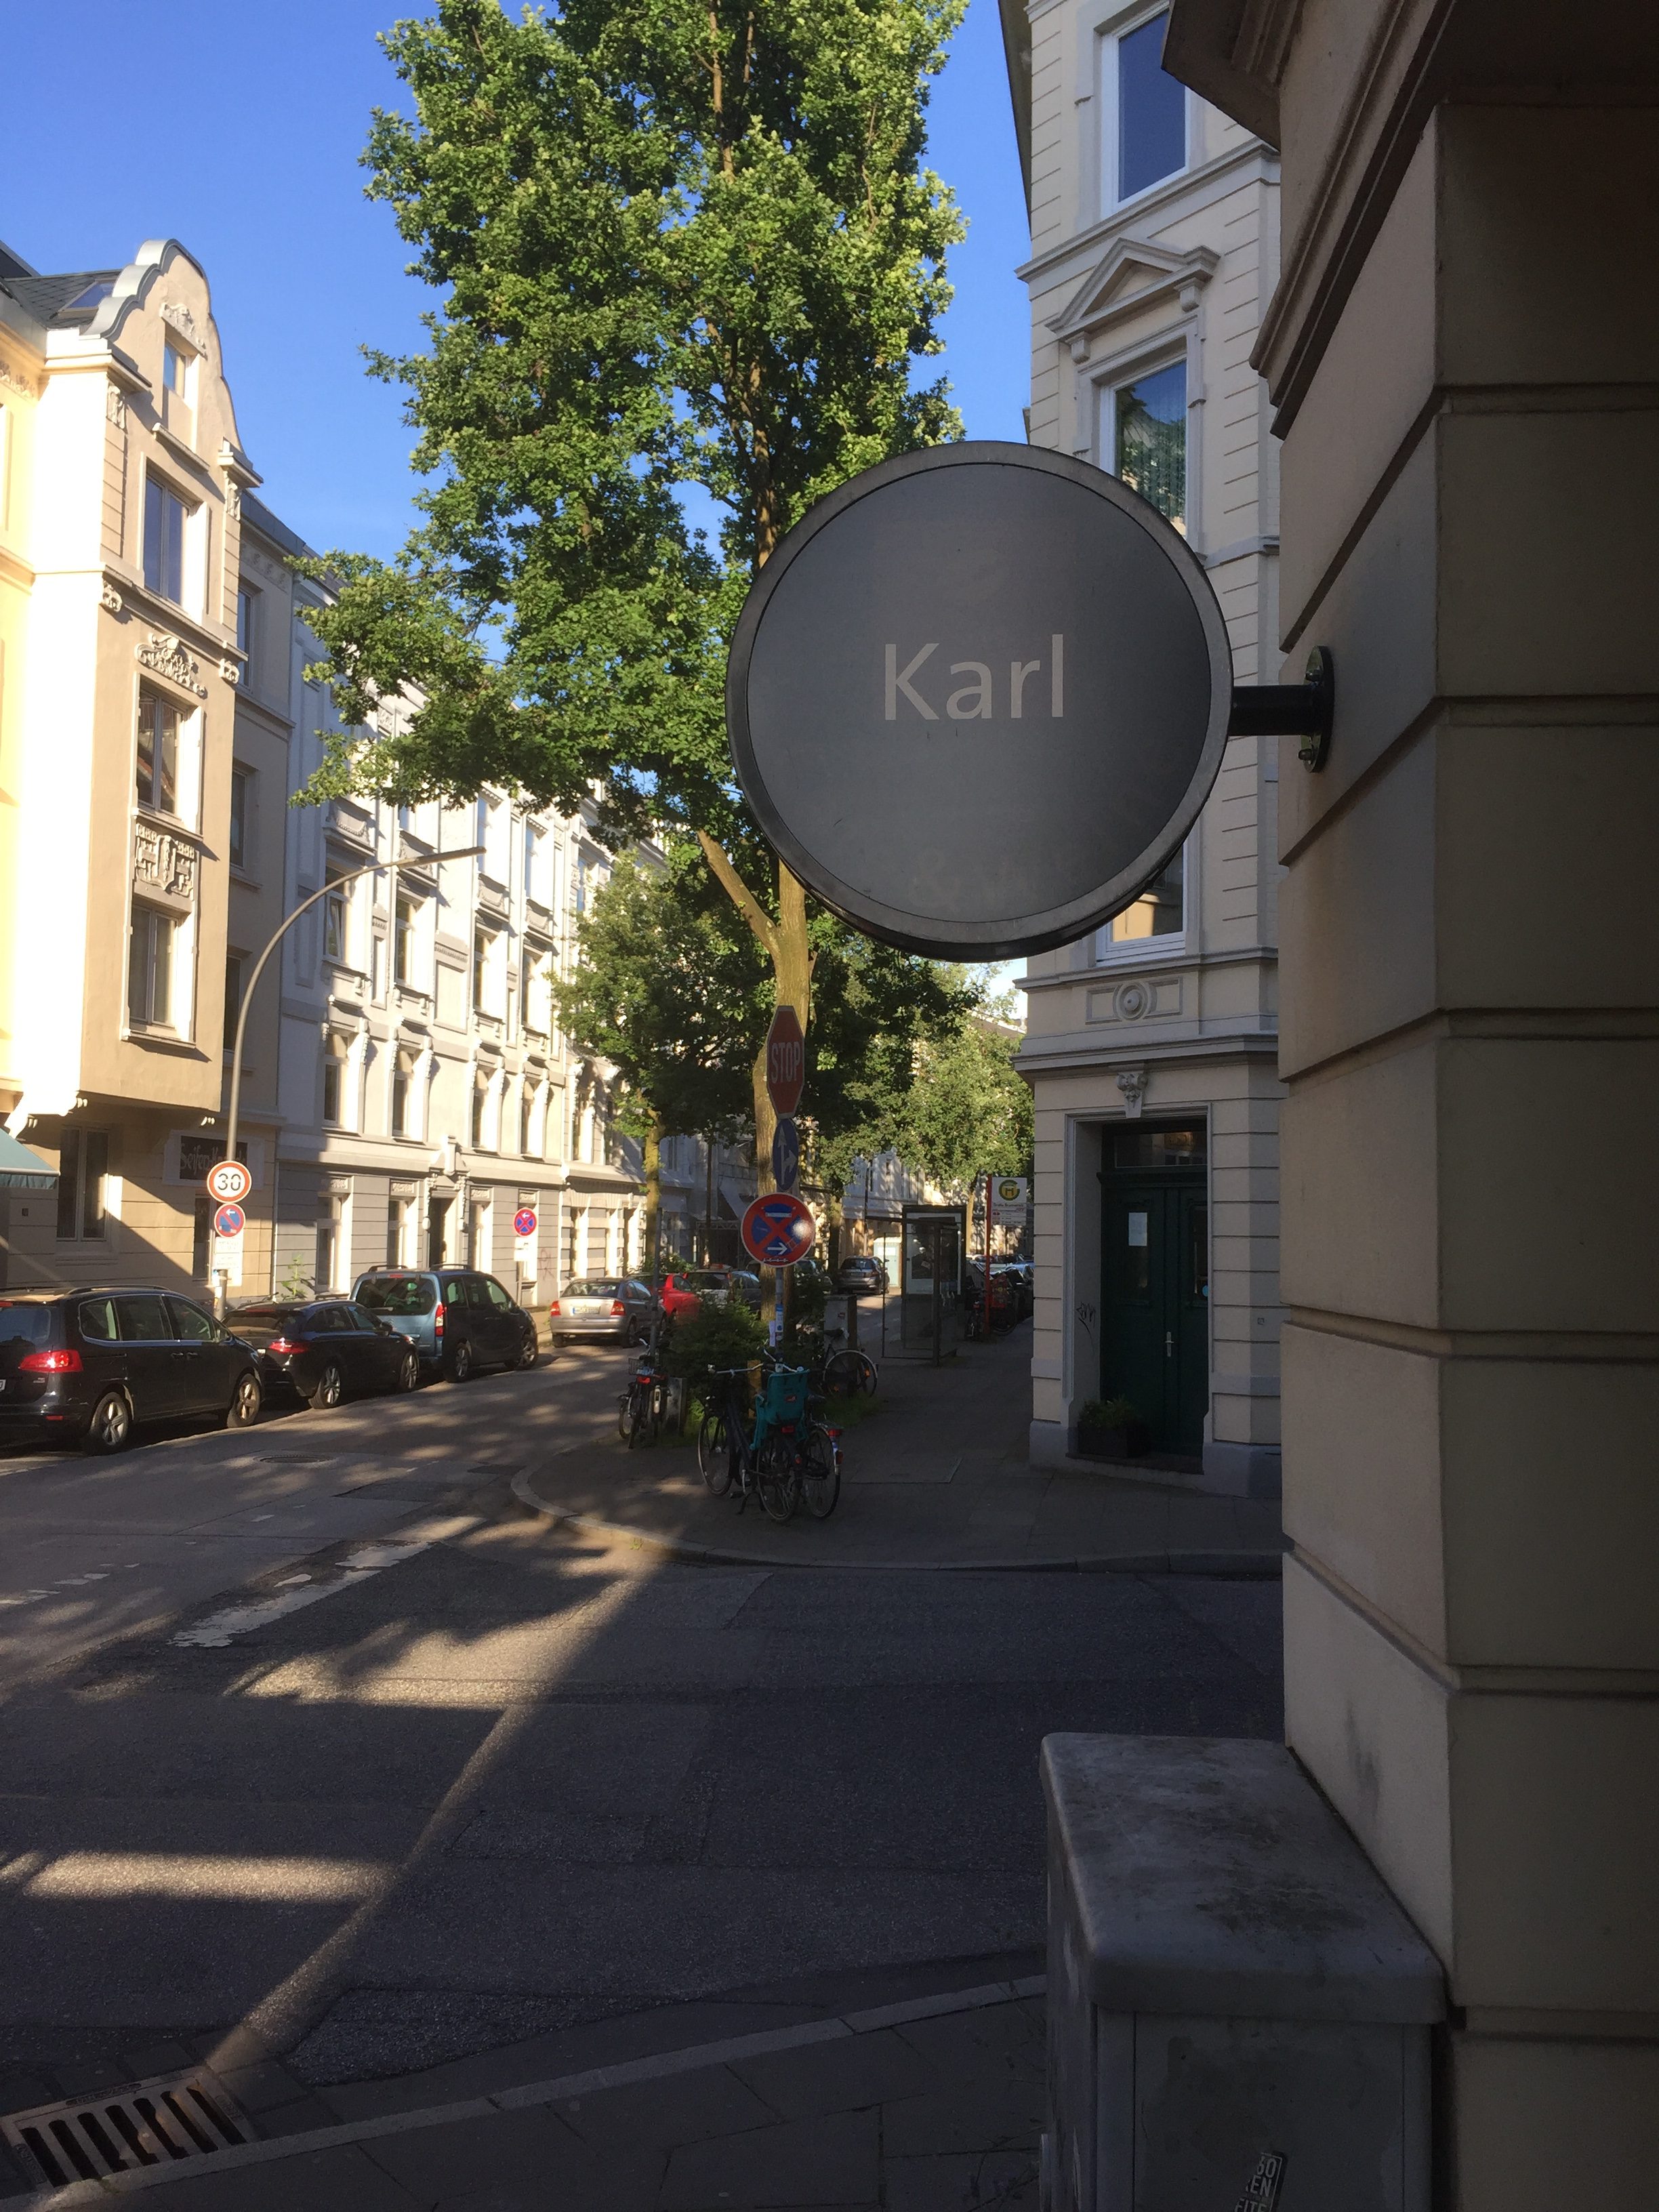 Karls Café & Weine Schild